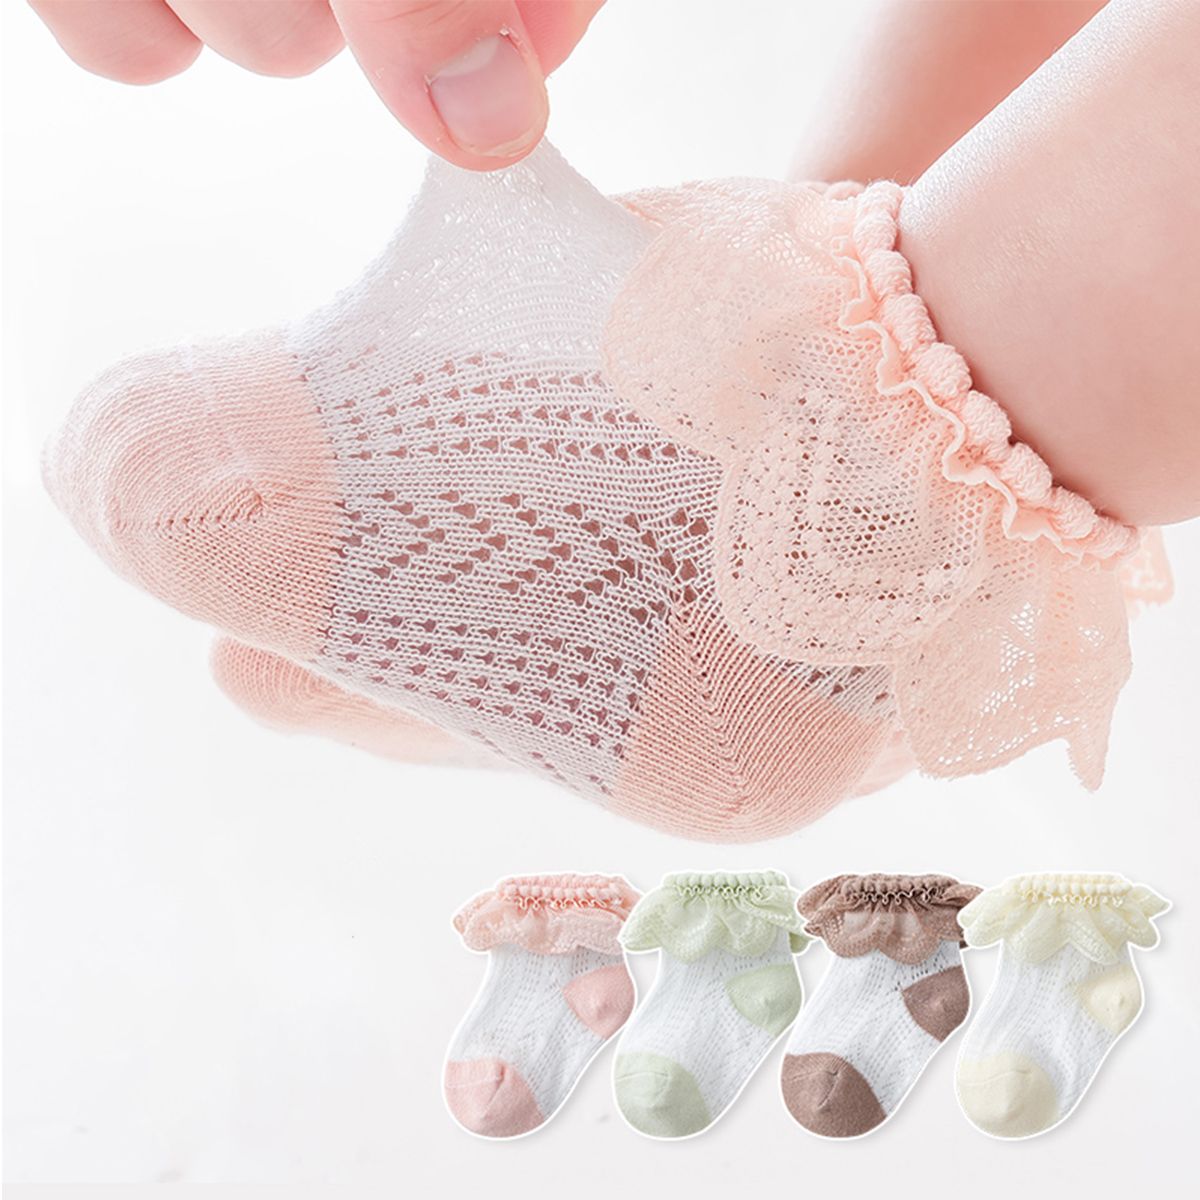 嬰兒/幼兒/兒童女孩甜美風格荷葉邊飾邊蕾絲網眼襪子